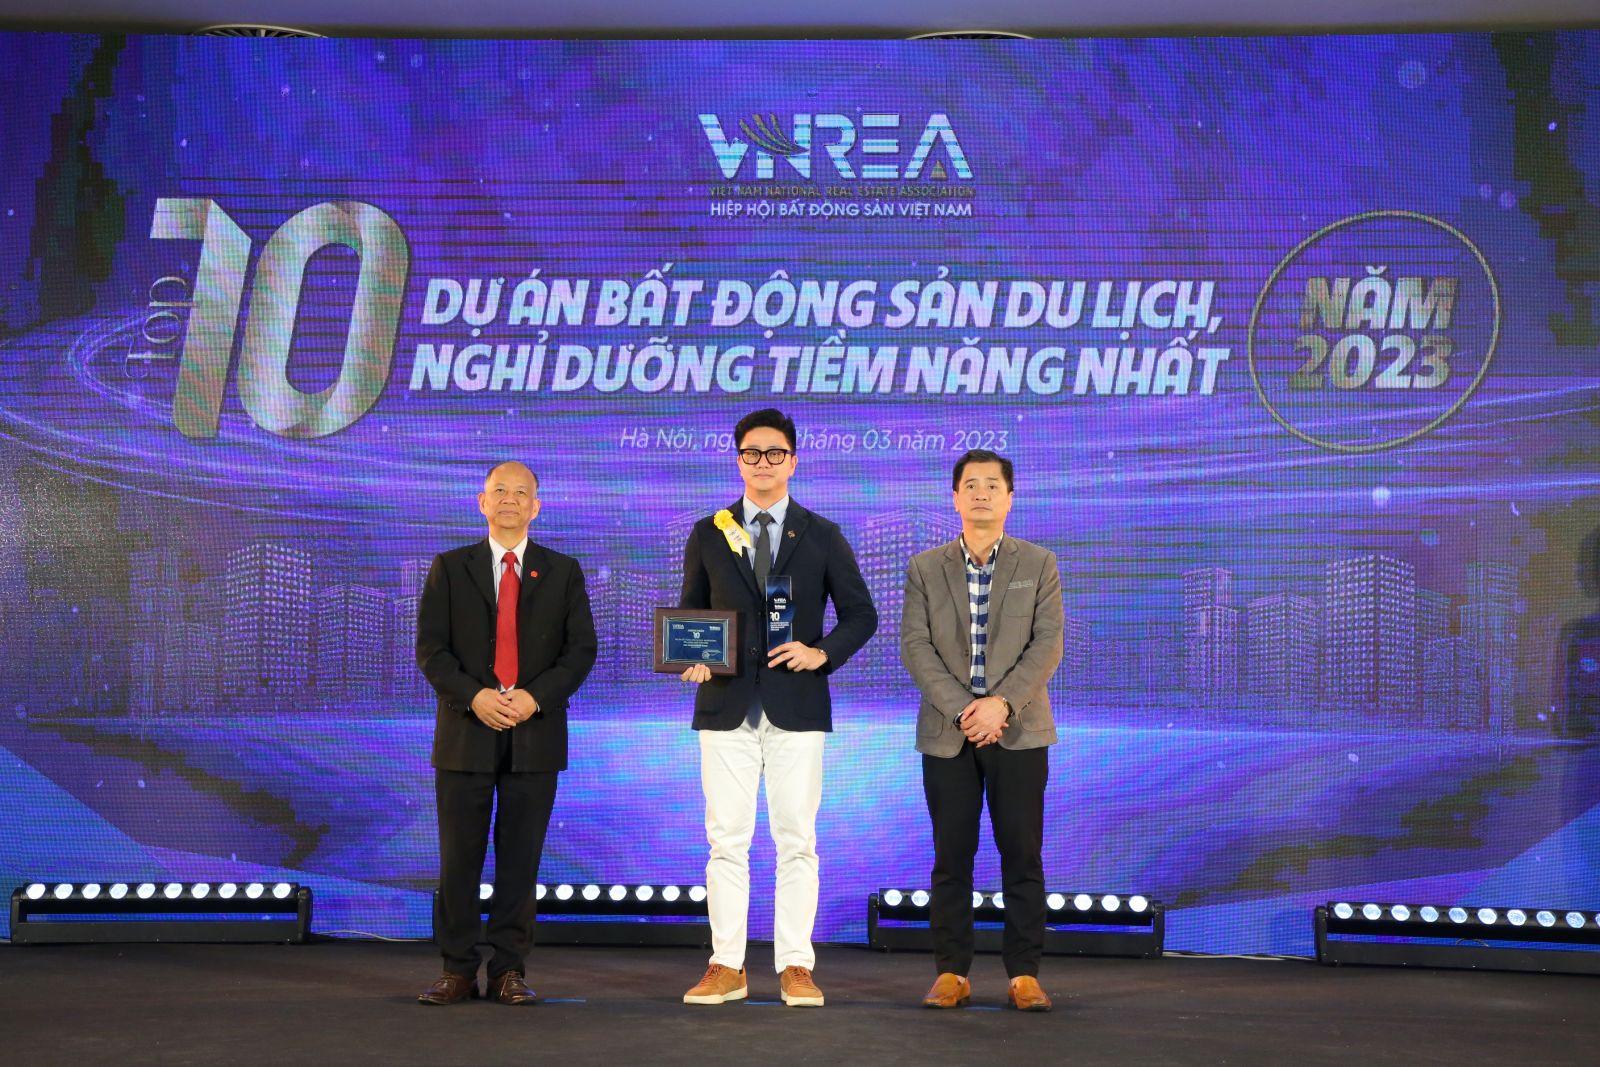 Sun Property - Top 10 nhà phát triển bất động sản hàng đầu Việt Nam năm 2022 - 3